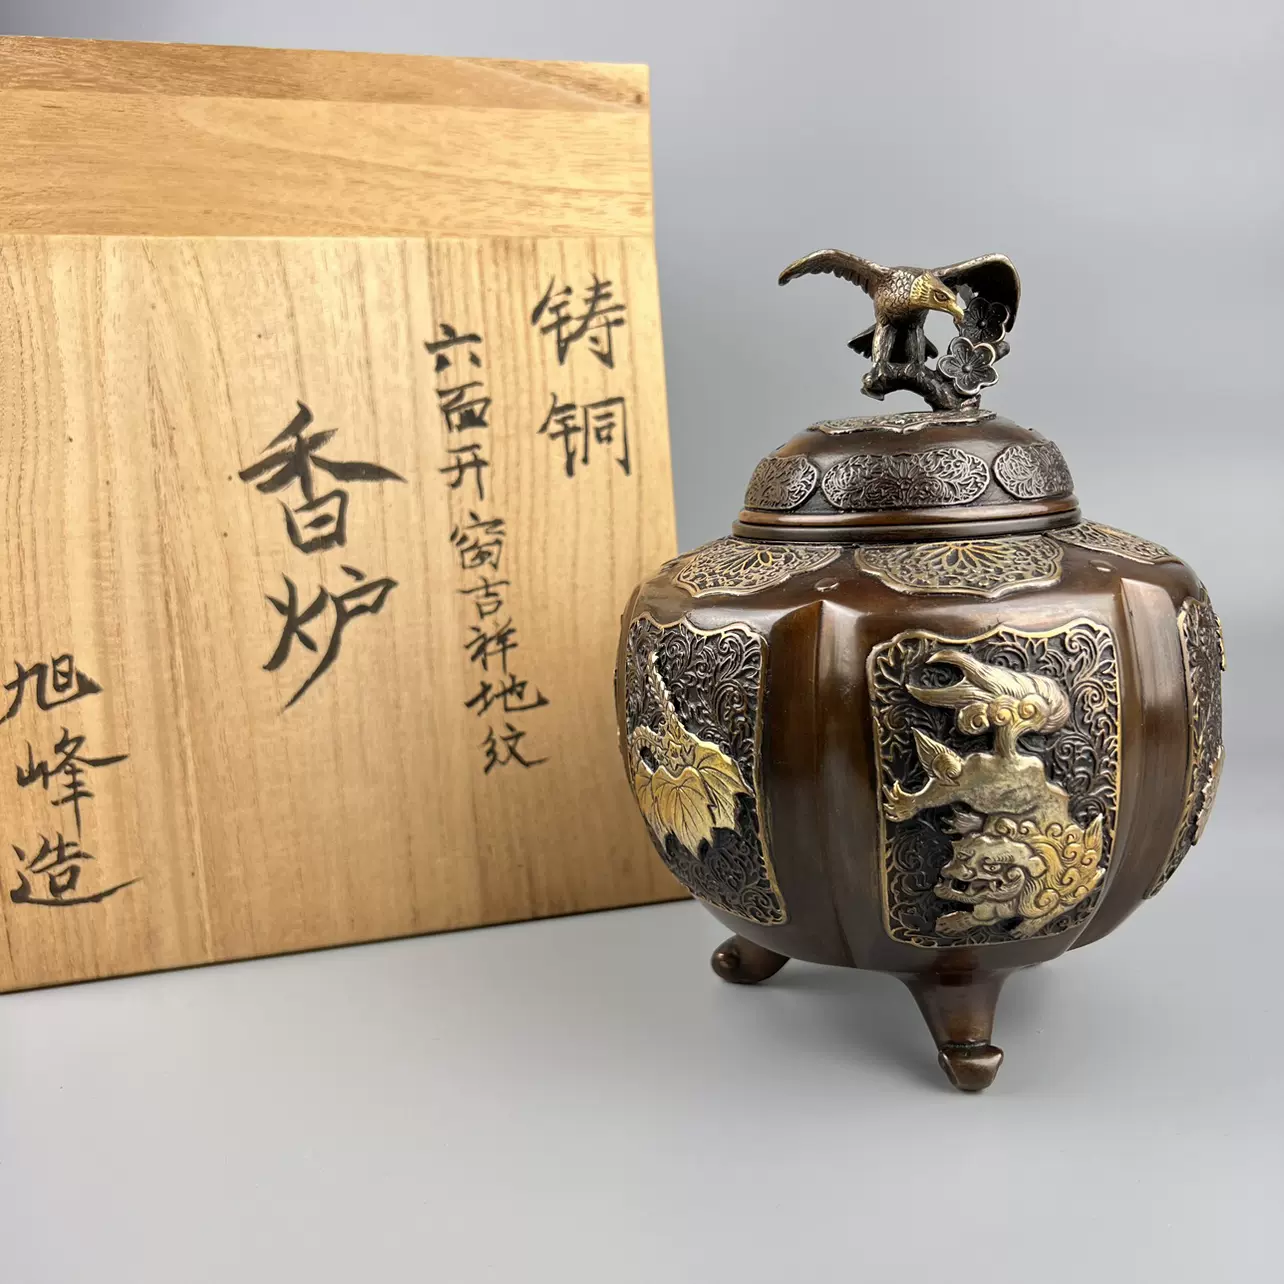 日本回流高岗铜器纯铜旭峰作香炉文玩古董收藏办公客厅茶室摆件-Taobao